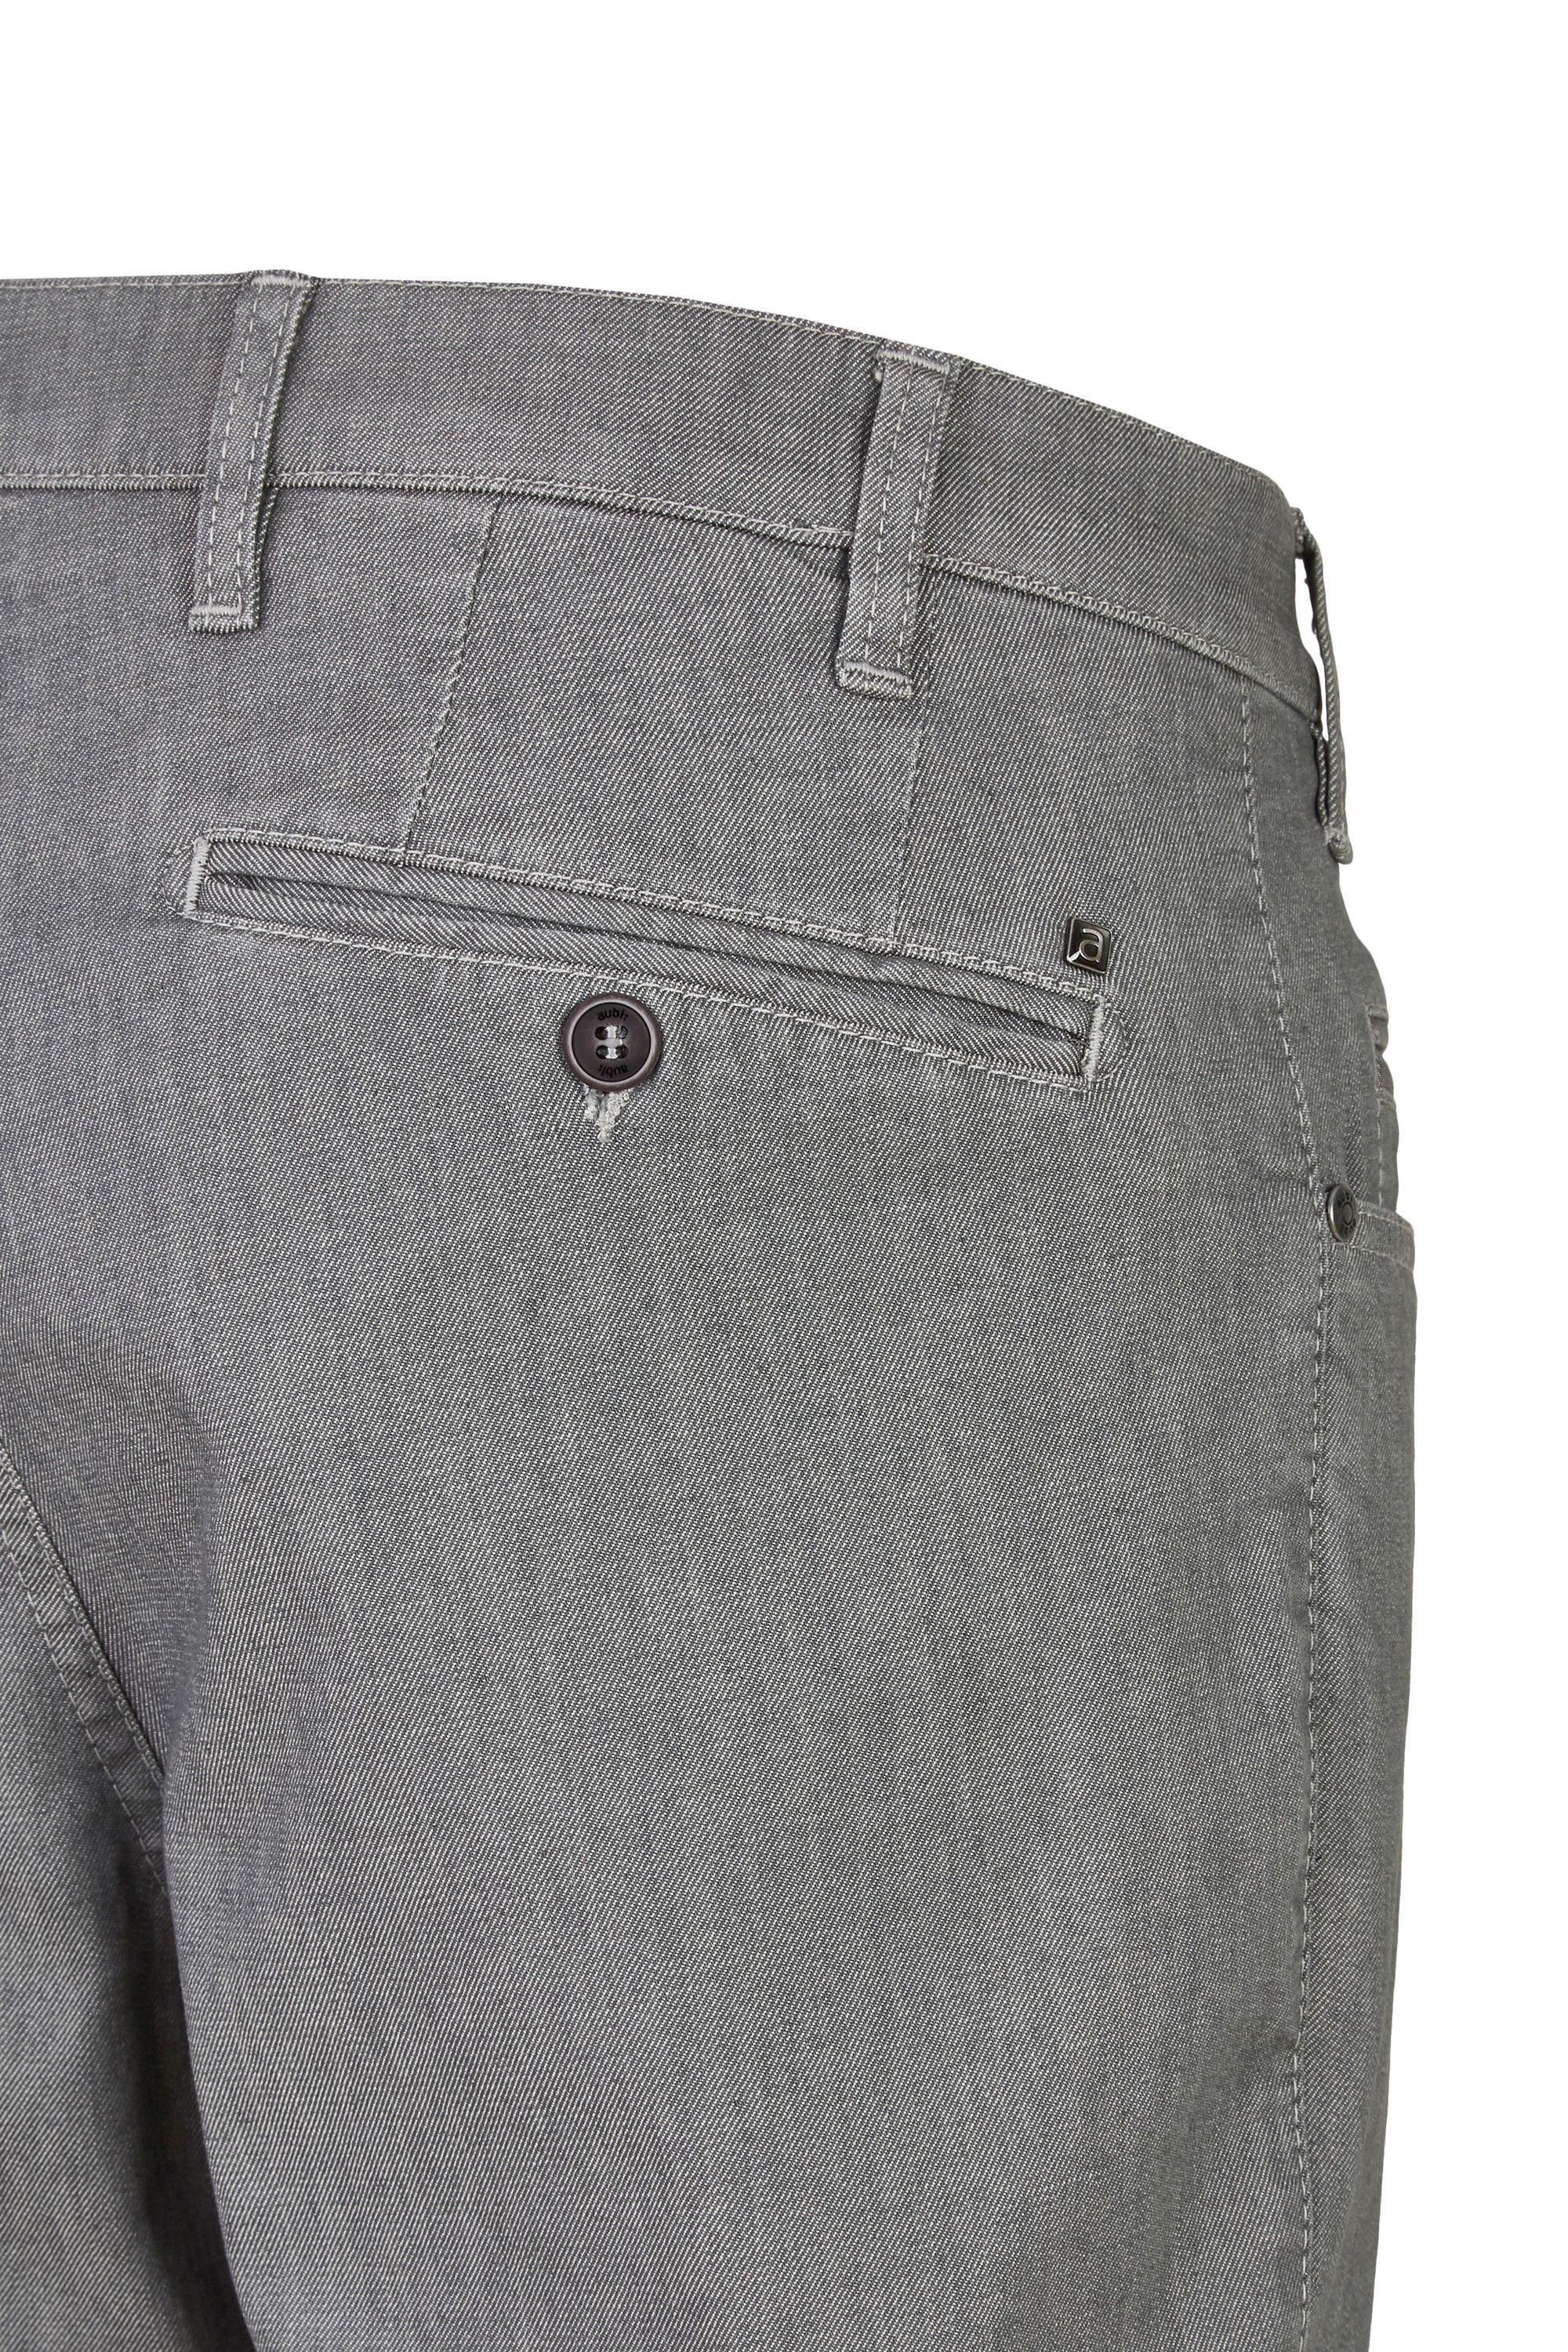 High Stretch Modell Jeans (56) 577 Baumwolle Jeans aus Perfect Hose grey aubi: Fit Flex aubi Sommer Herren Bequeme